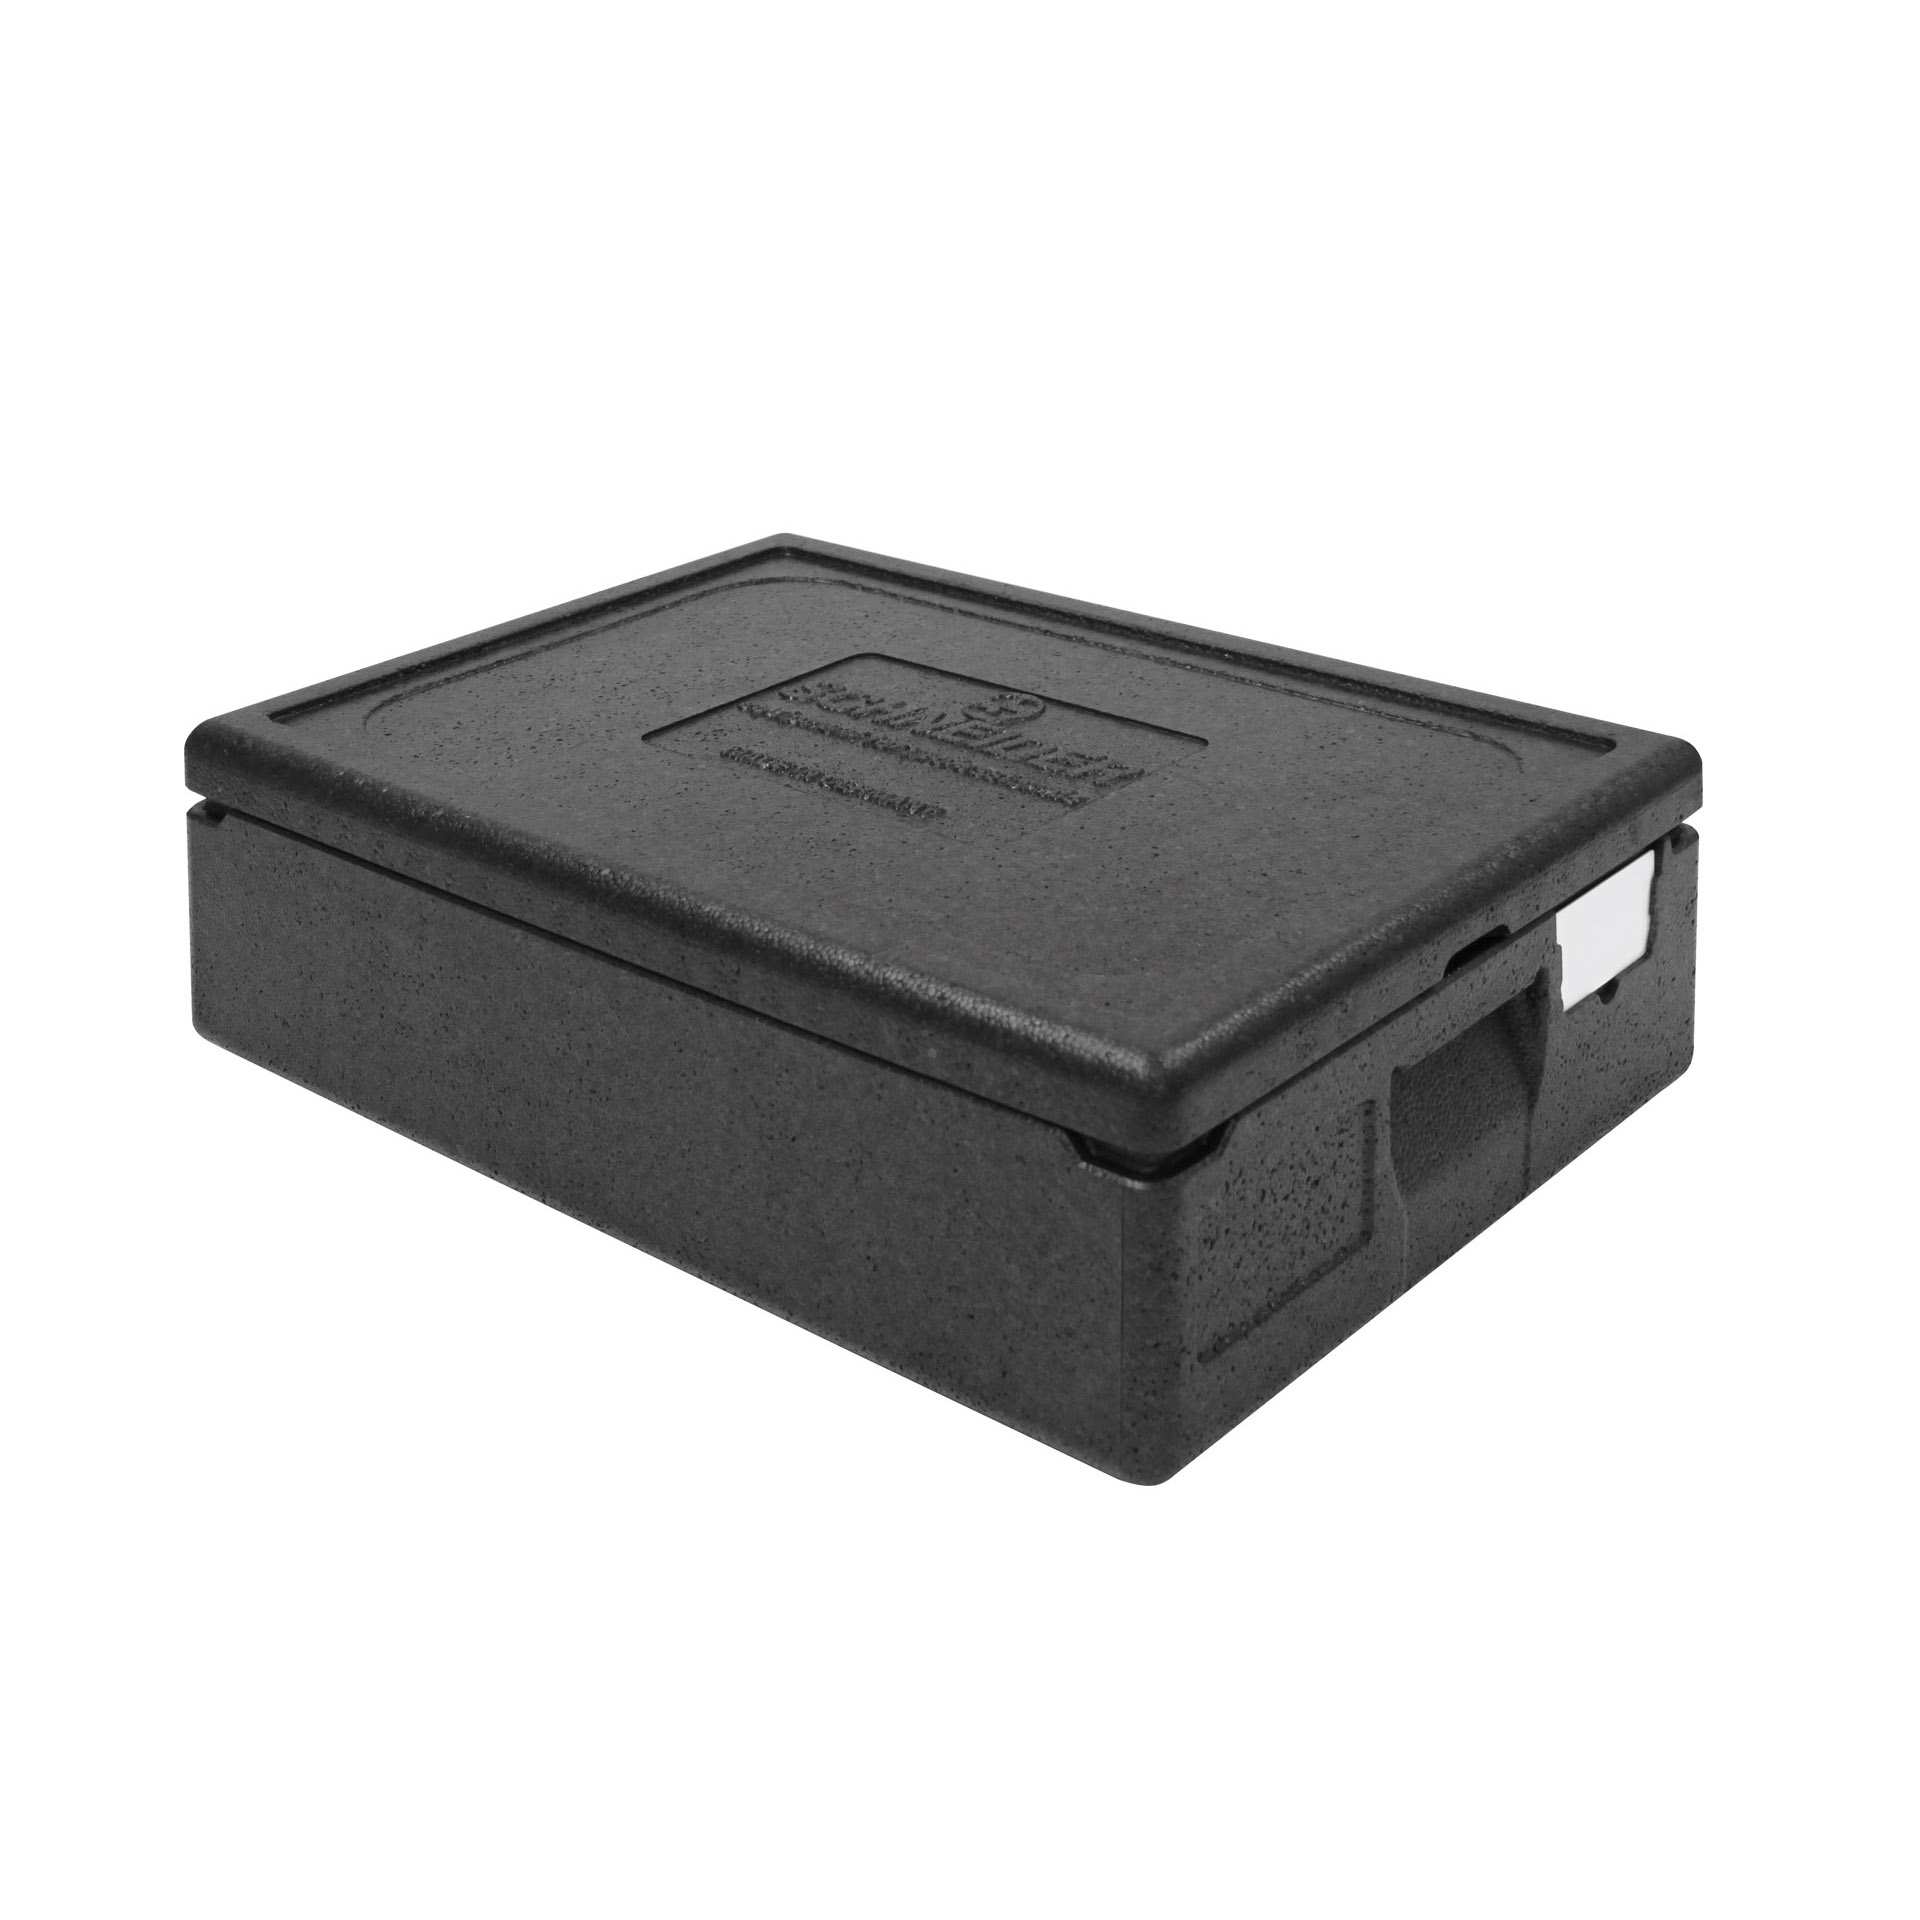 TOP-BOX - mit Deckel - Abm. 60,0 x 40,0 x 18,0 cm - Inhalt 21 l - GN 1/1 (530 x 325 mm) - EPP - 620180-C